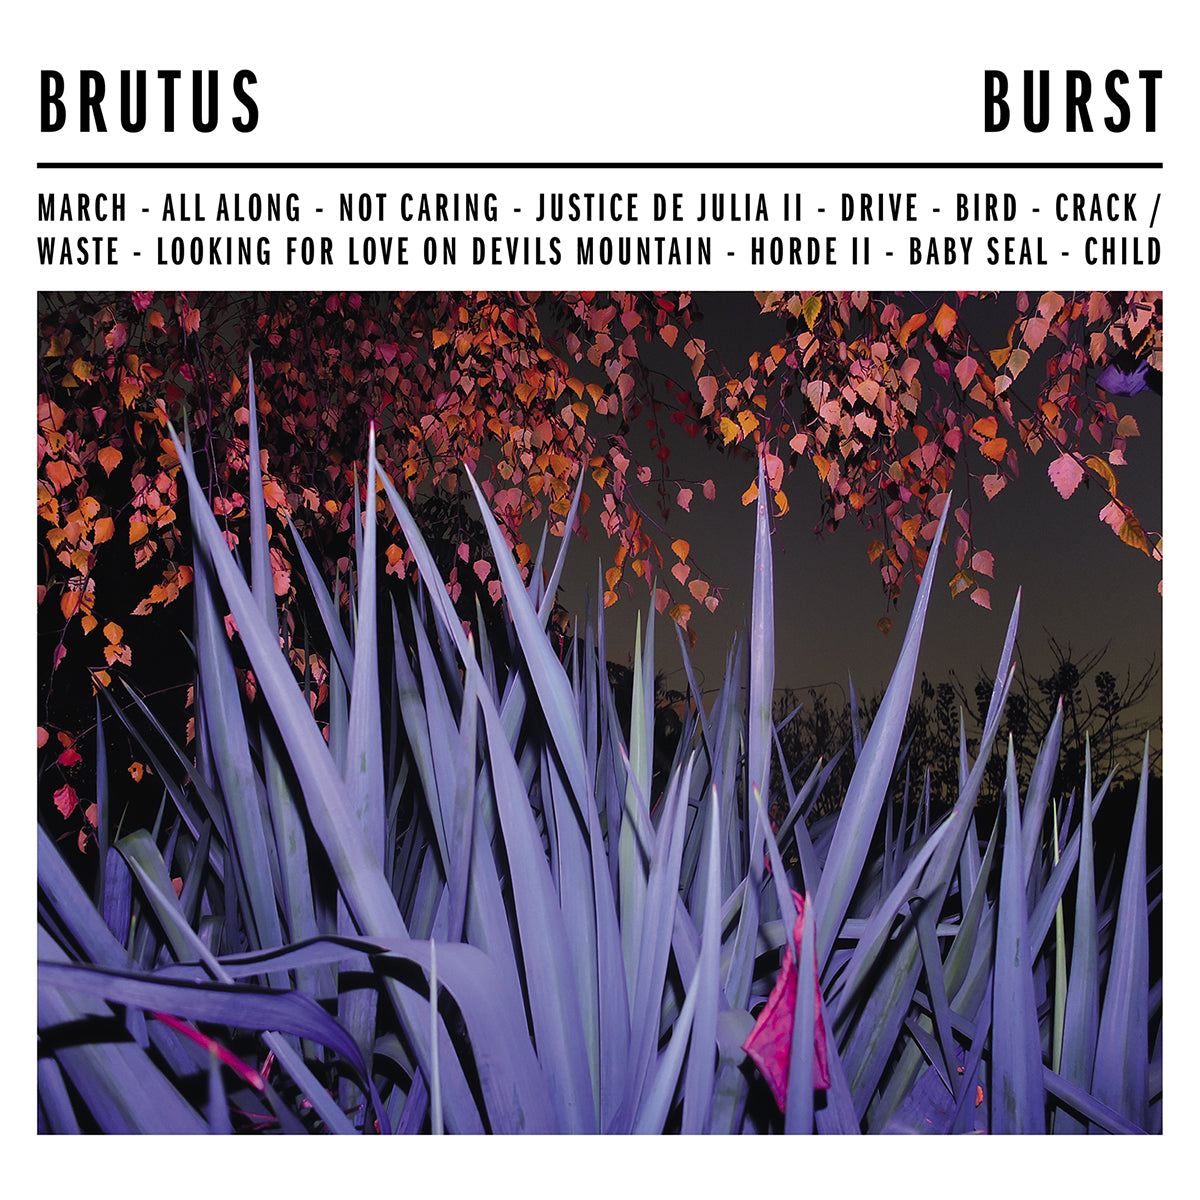 BRUTUS "Burst" LP